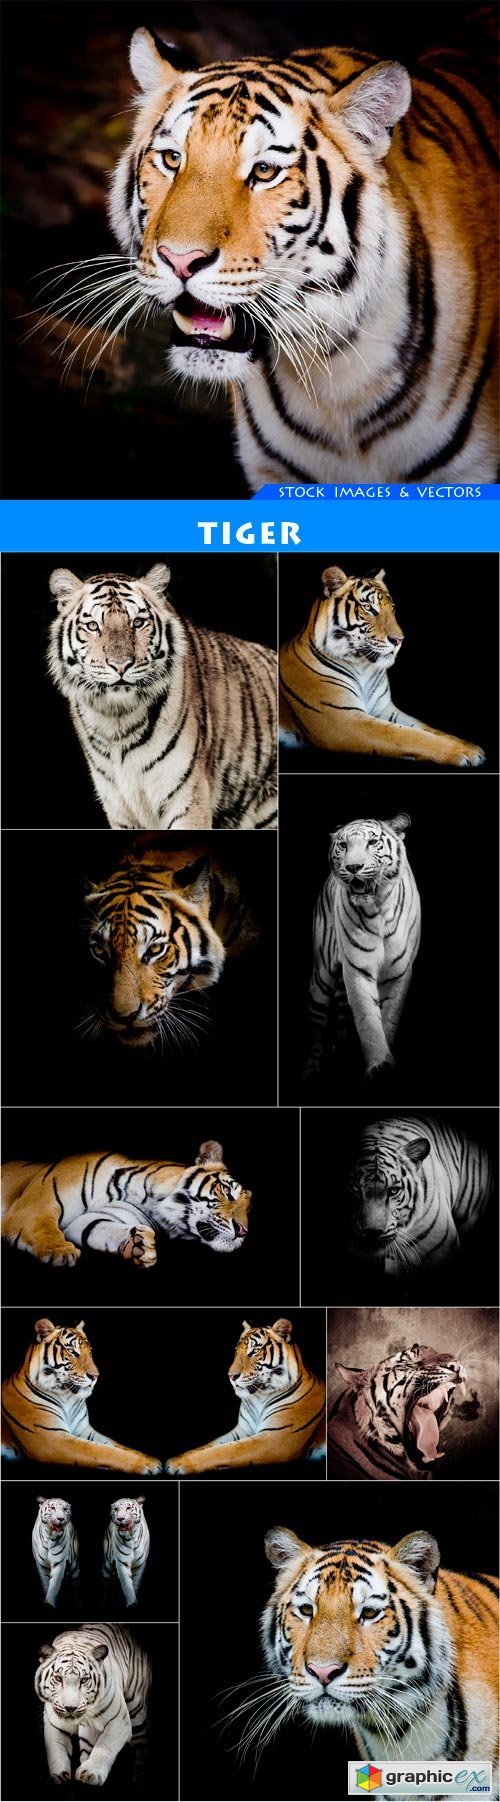 Tiger #1 12X JPEG